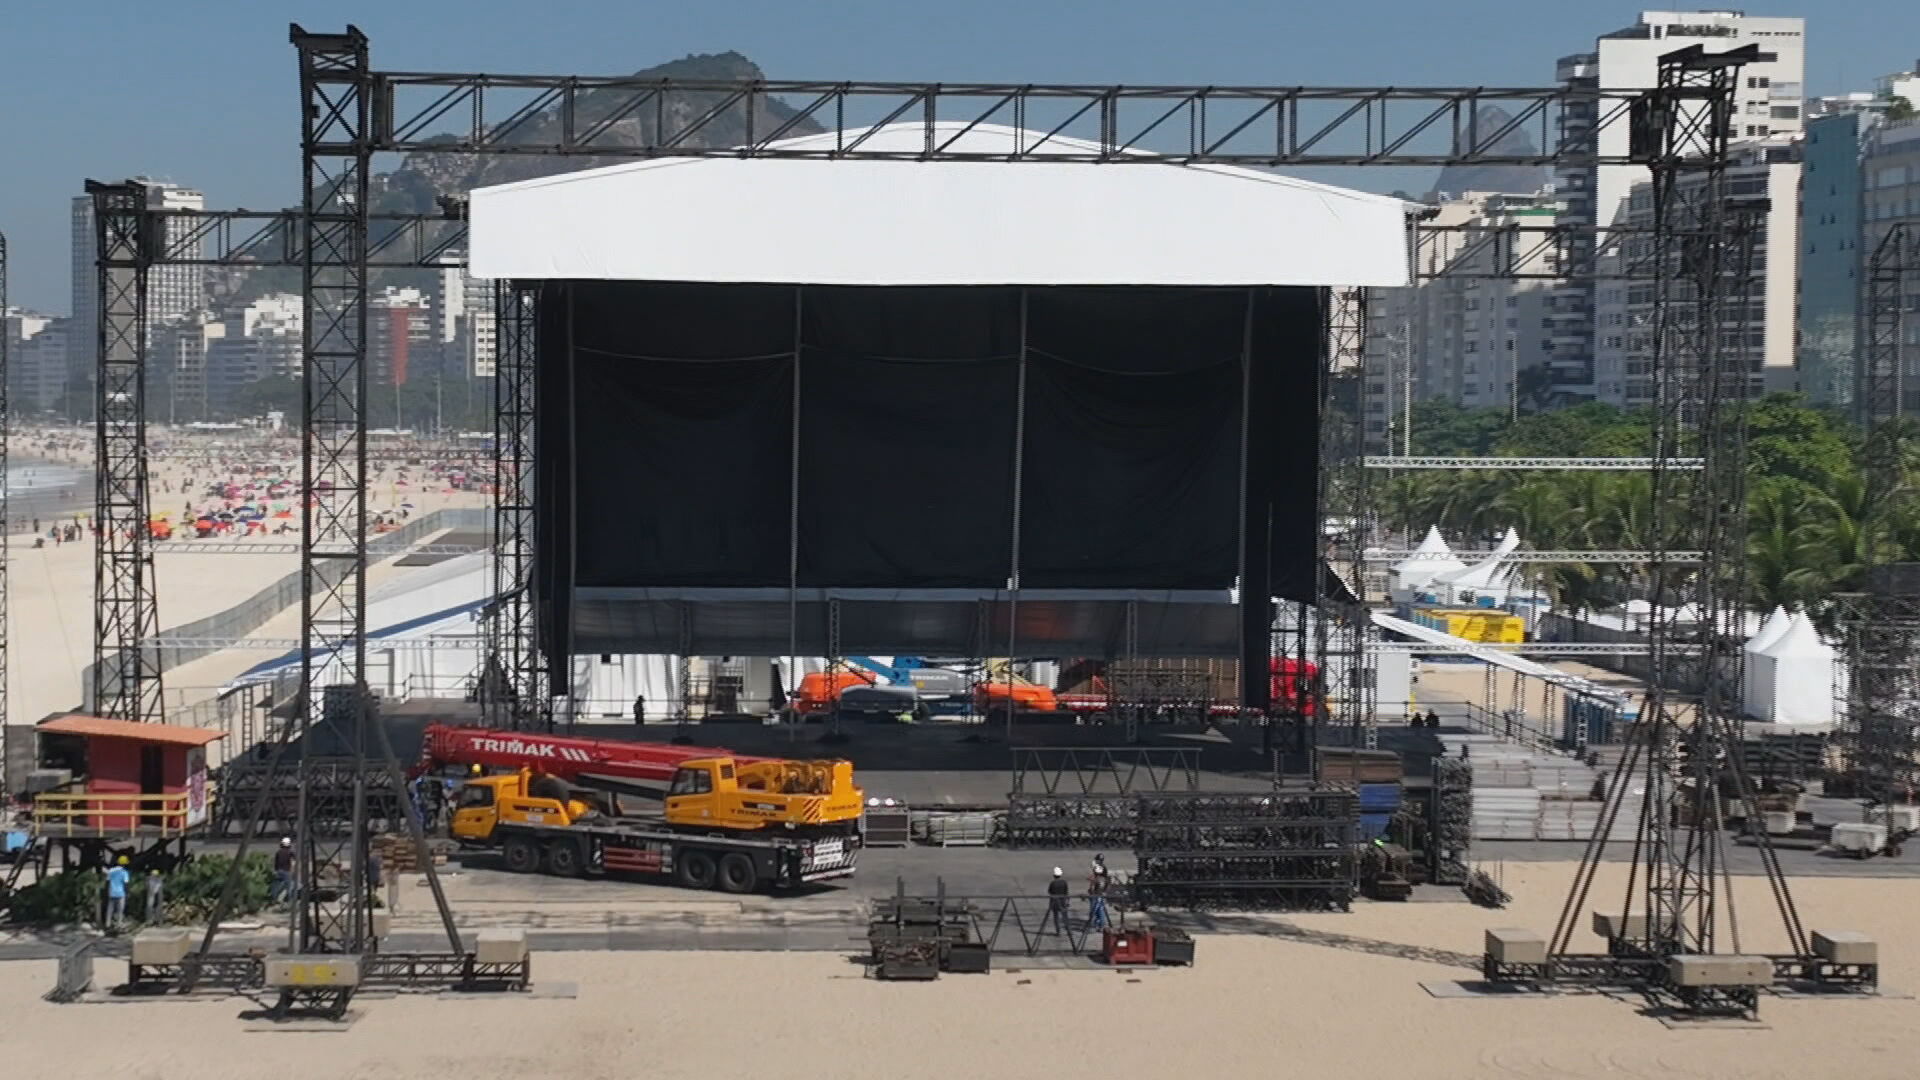 Madonna no Rio: 270 toneladas de estrutura, 200 pessoas de equipe, palco de 24 metros e mais